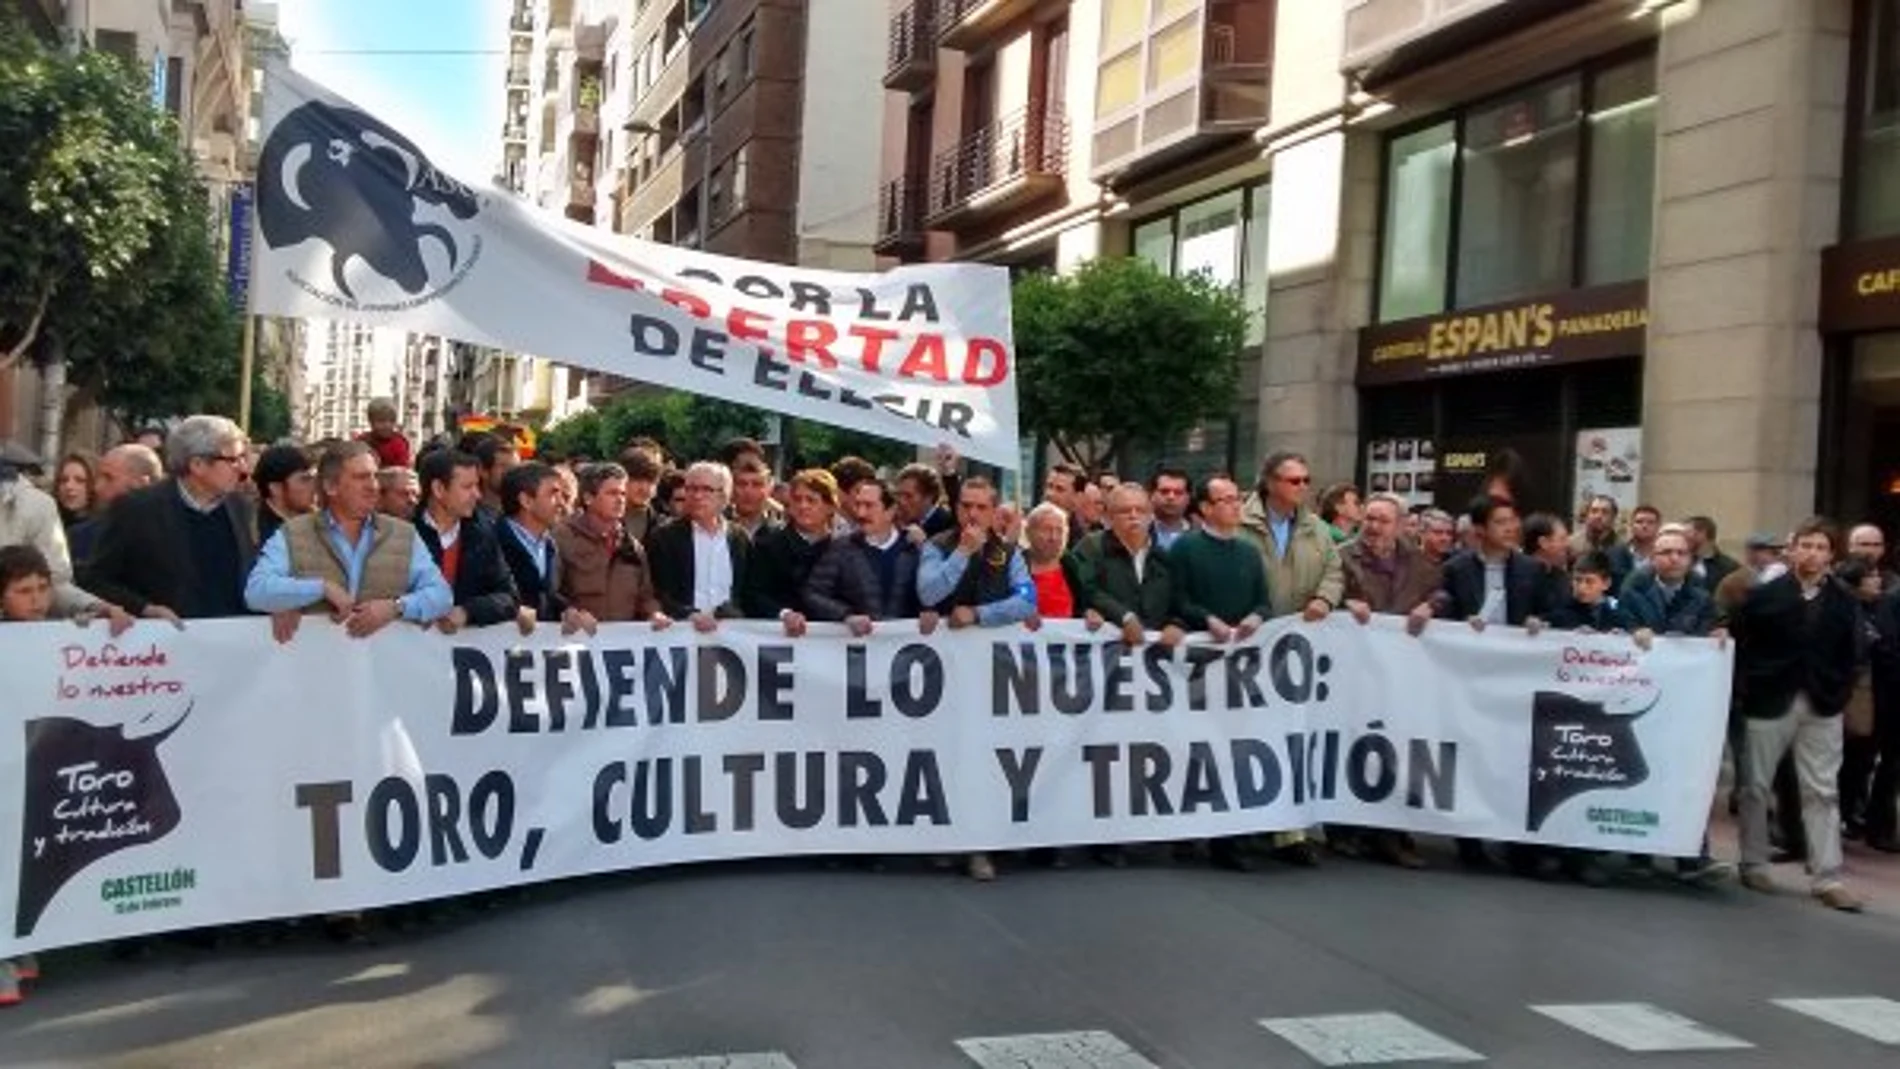 Numerosas personalidades del mundo del toro acudieron a la multitudinaria manifestación taurina celebrada el pasado 15F en Castellón